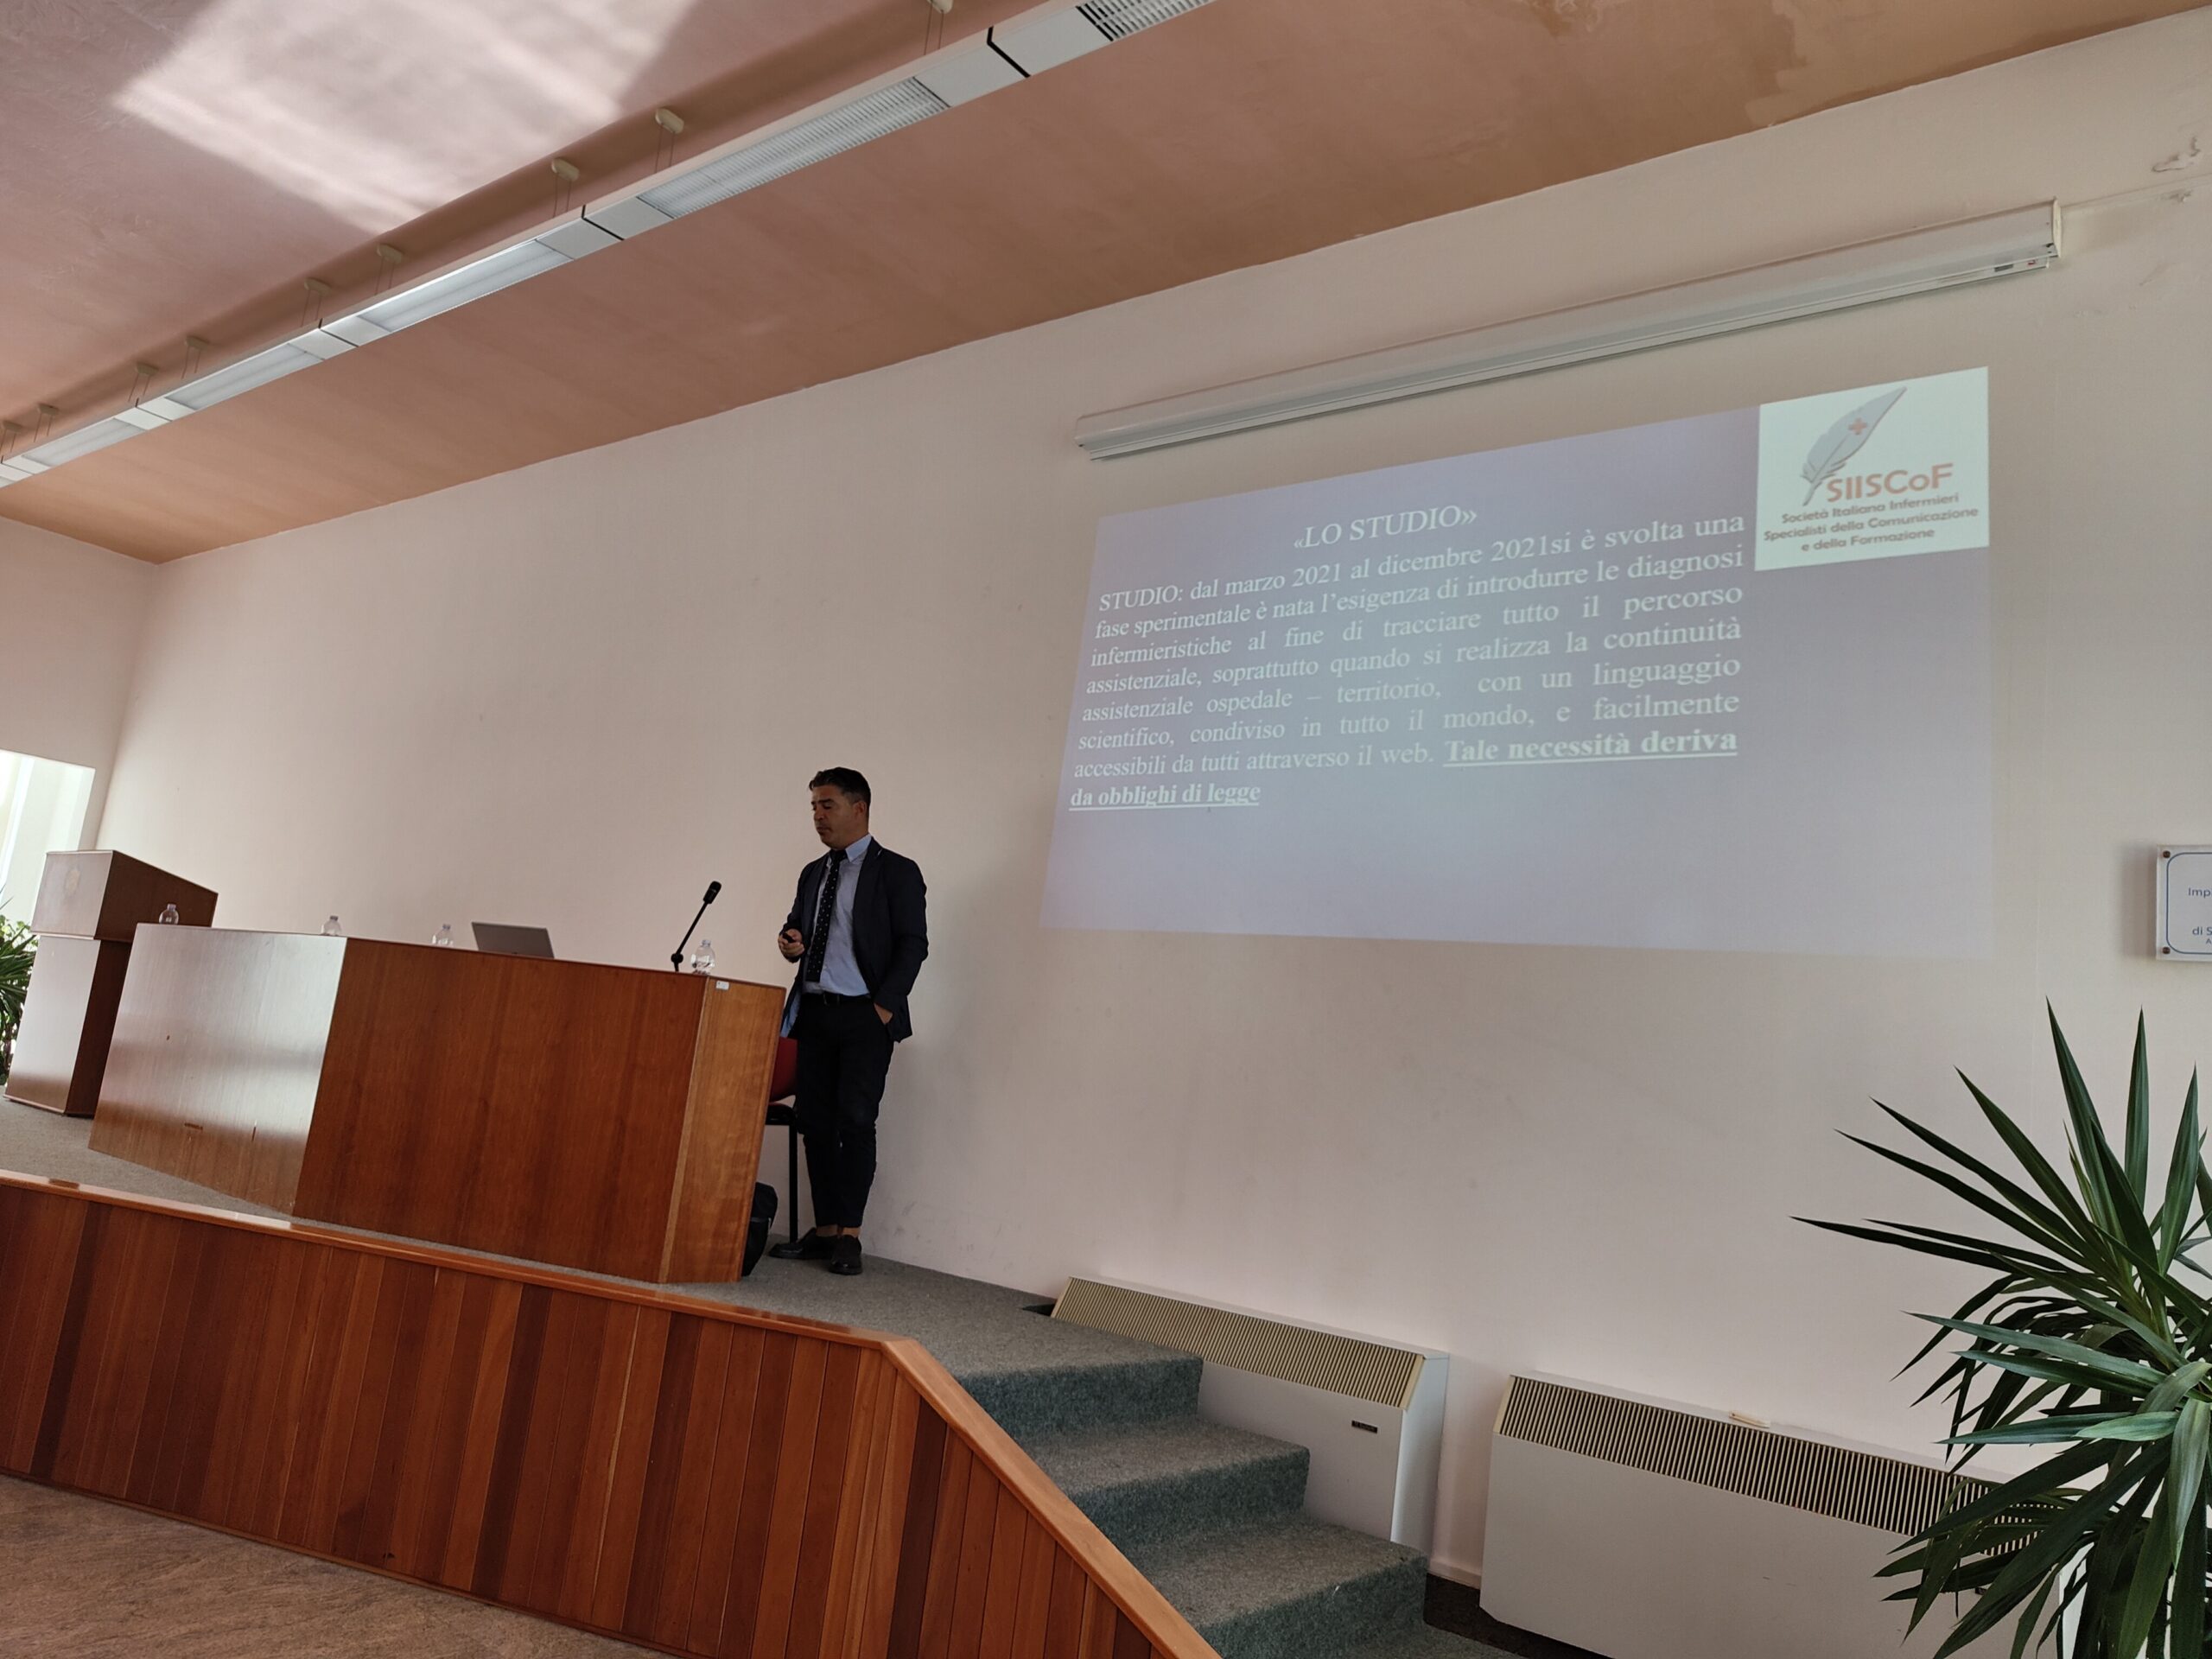 Giulio Ianzano, presidente della SIISCOF, ha illustrato i risultati ottenuti nell'ambito dell'assistenza psichiatrica attraverso l'utilizzo del linguaggio ICNP.